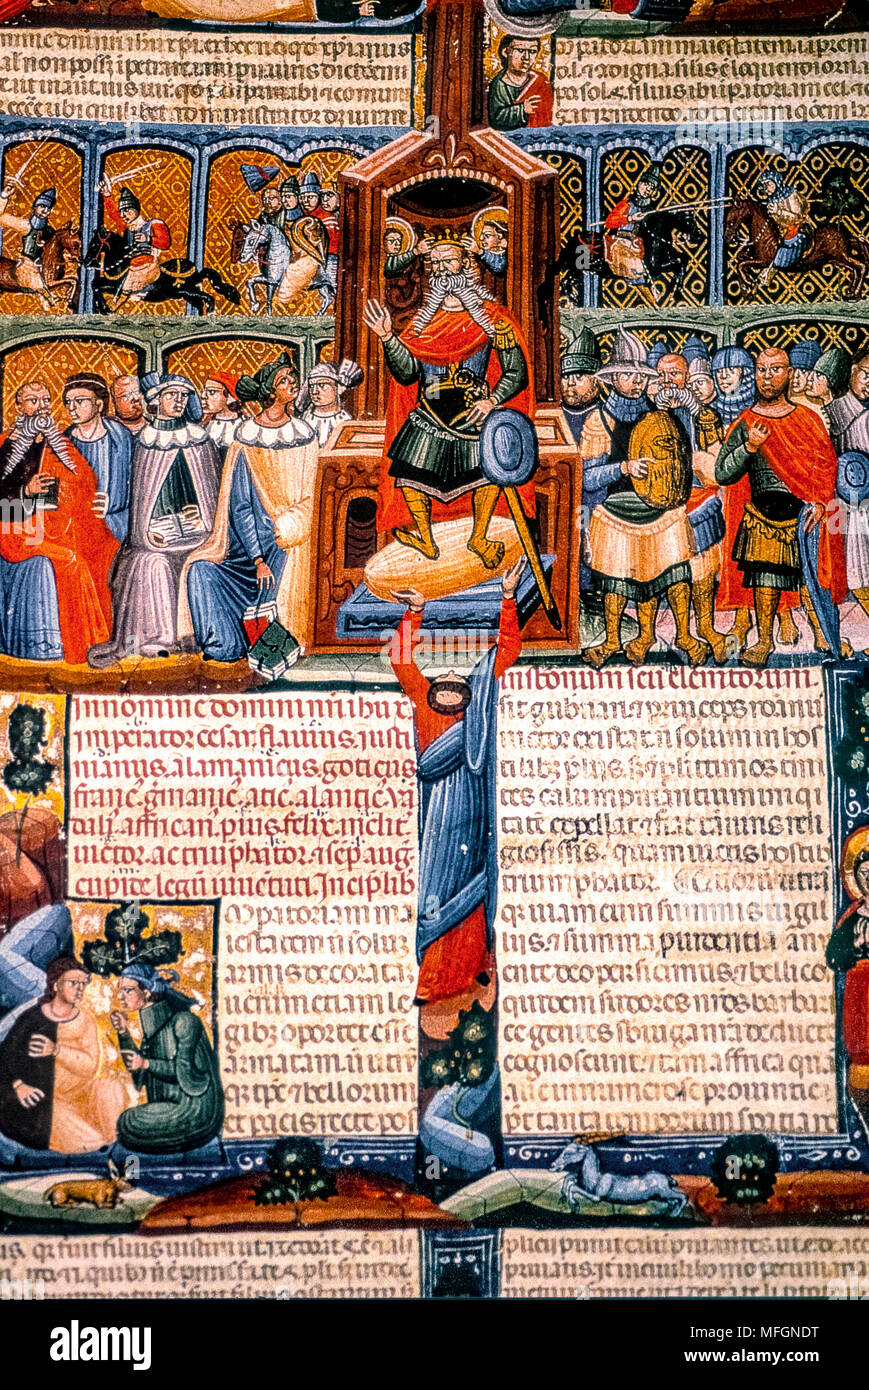 Italien Forlì Cesena - Biblioteca Malatestiana, die beleuchtet werden die Codes "INSTITUTIONES von giustiniano - Darstellung von Justinian und seinen Hof - über 1330 Stockfoto